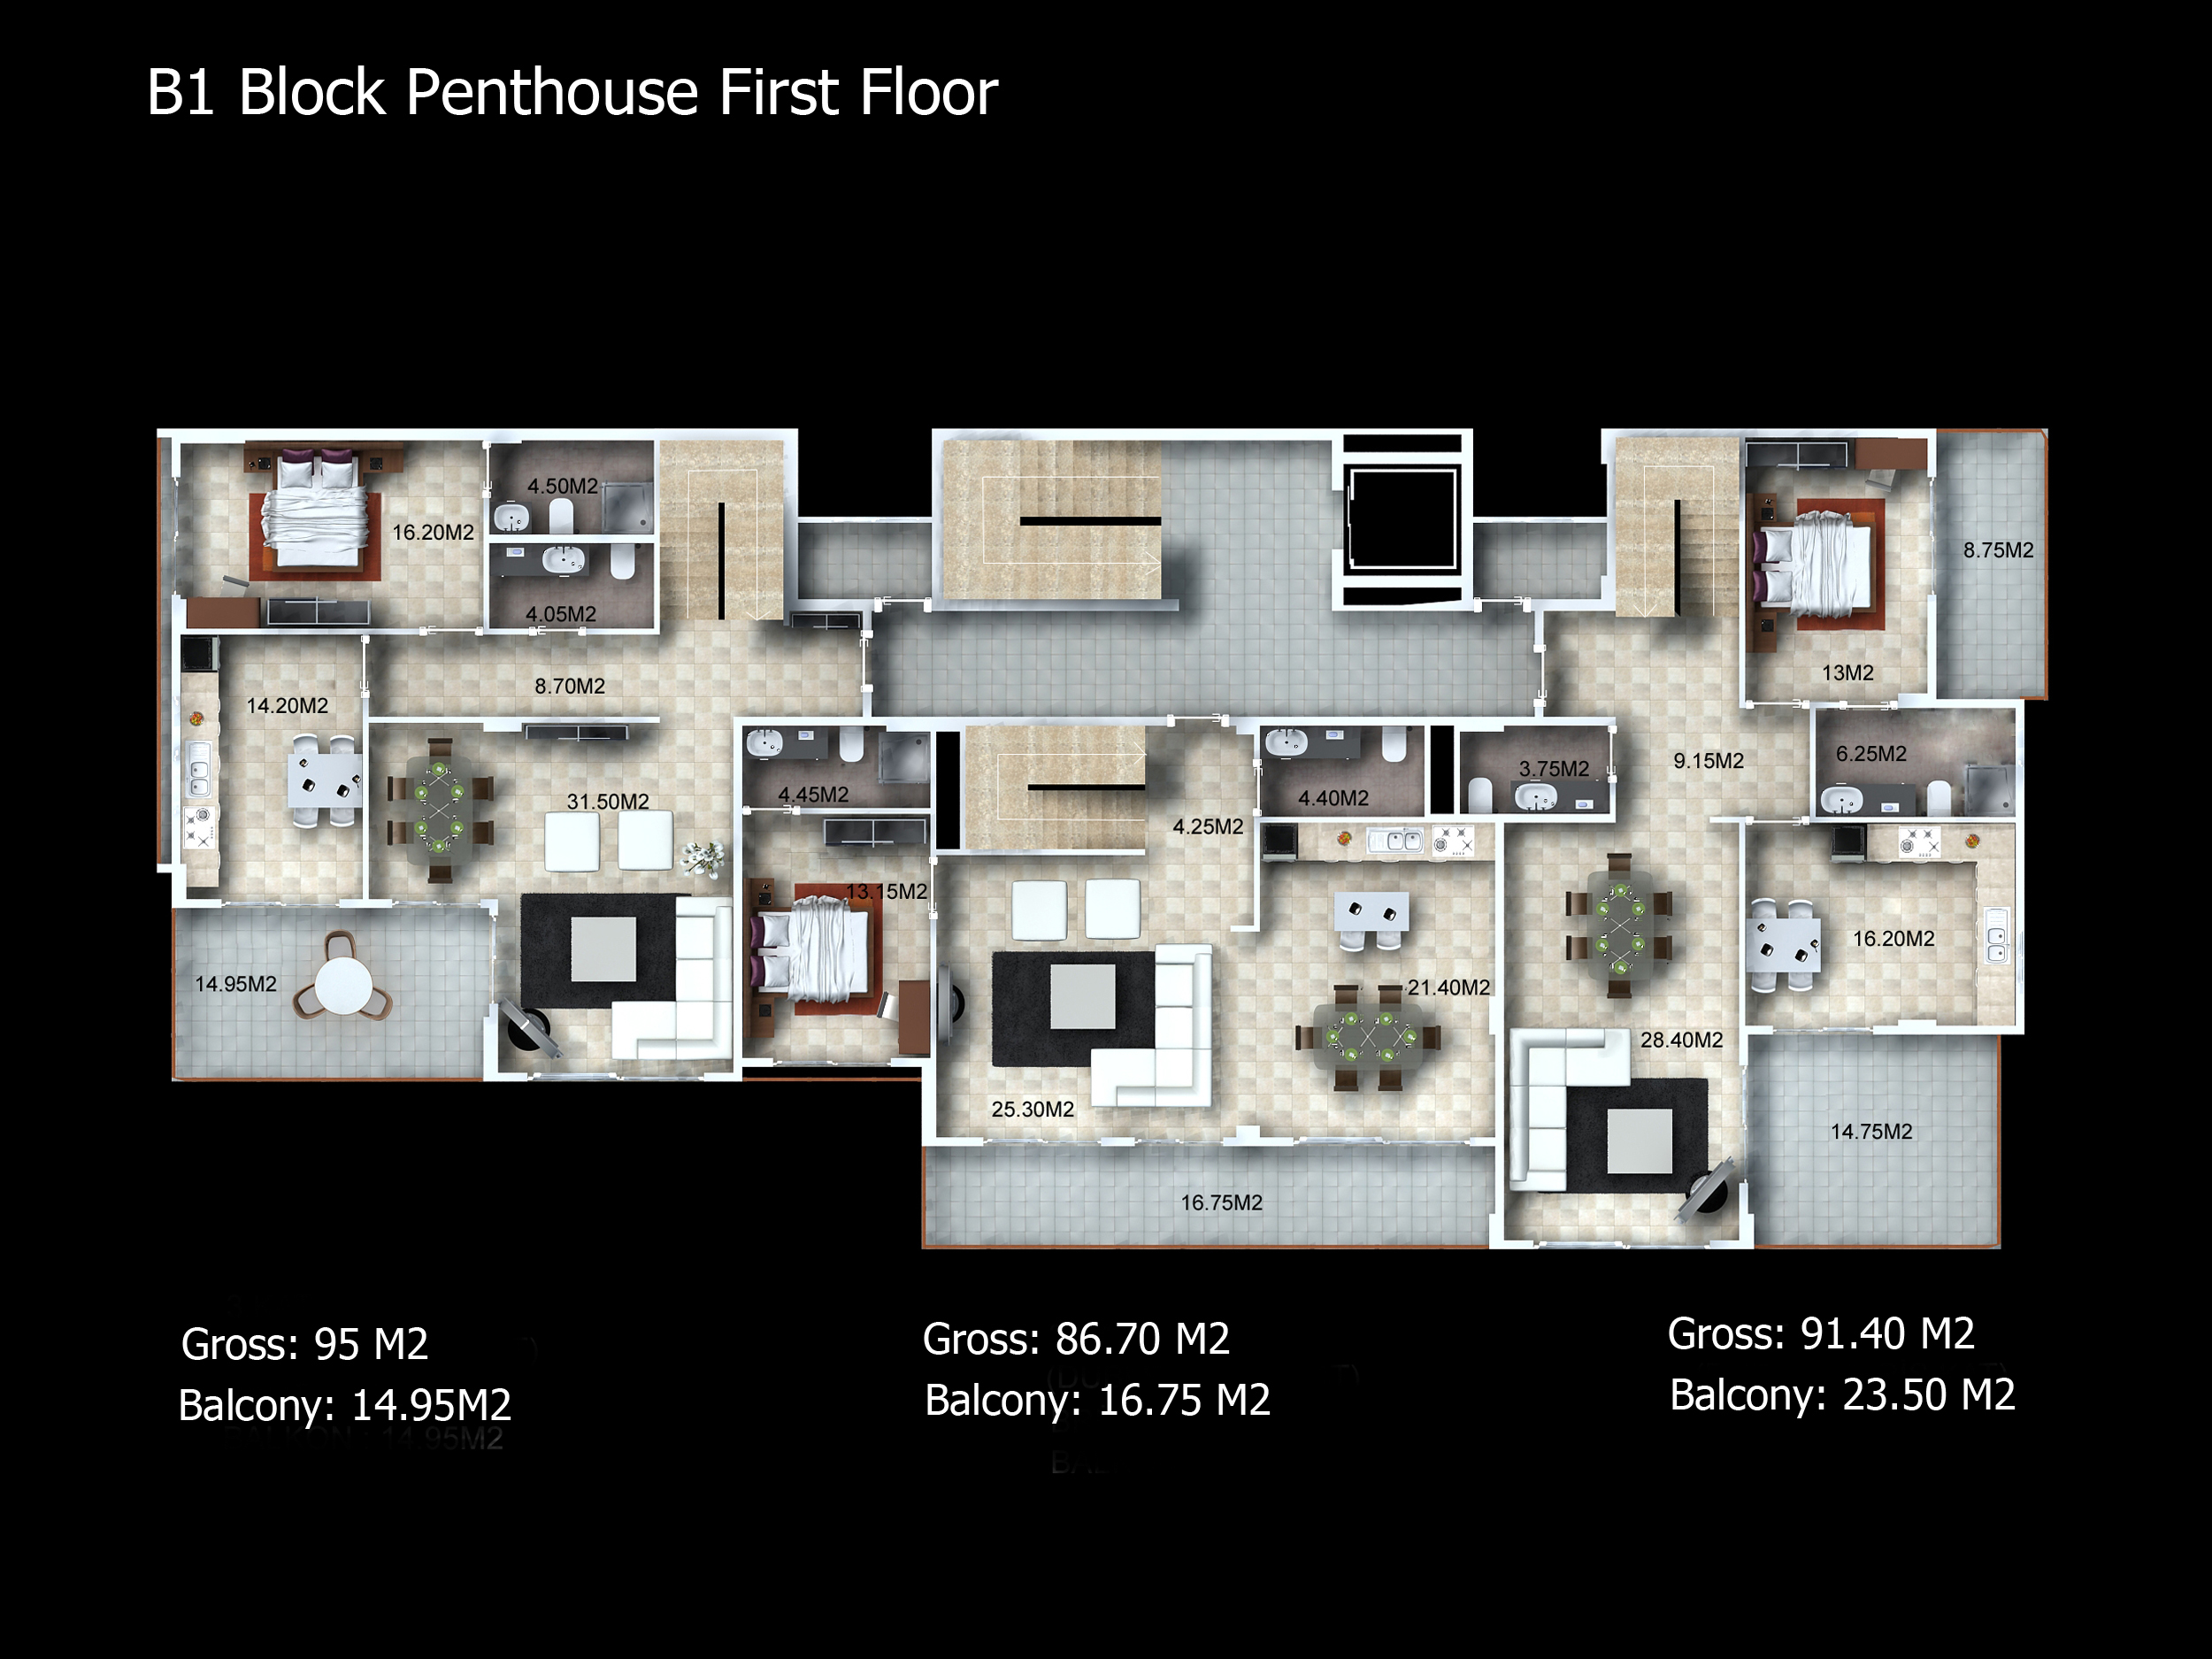 b1-block-penthouse-first-floor